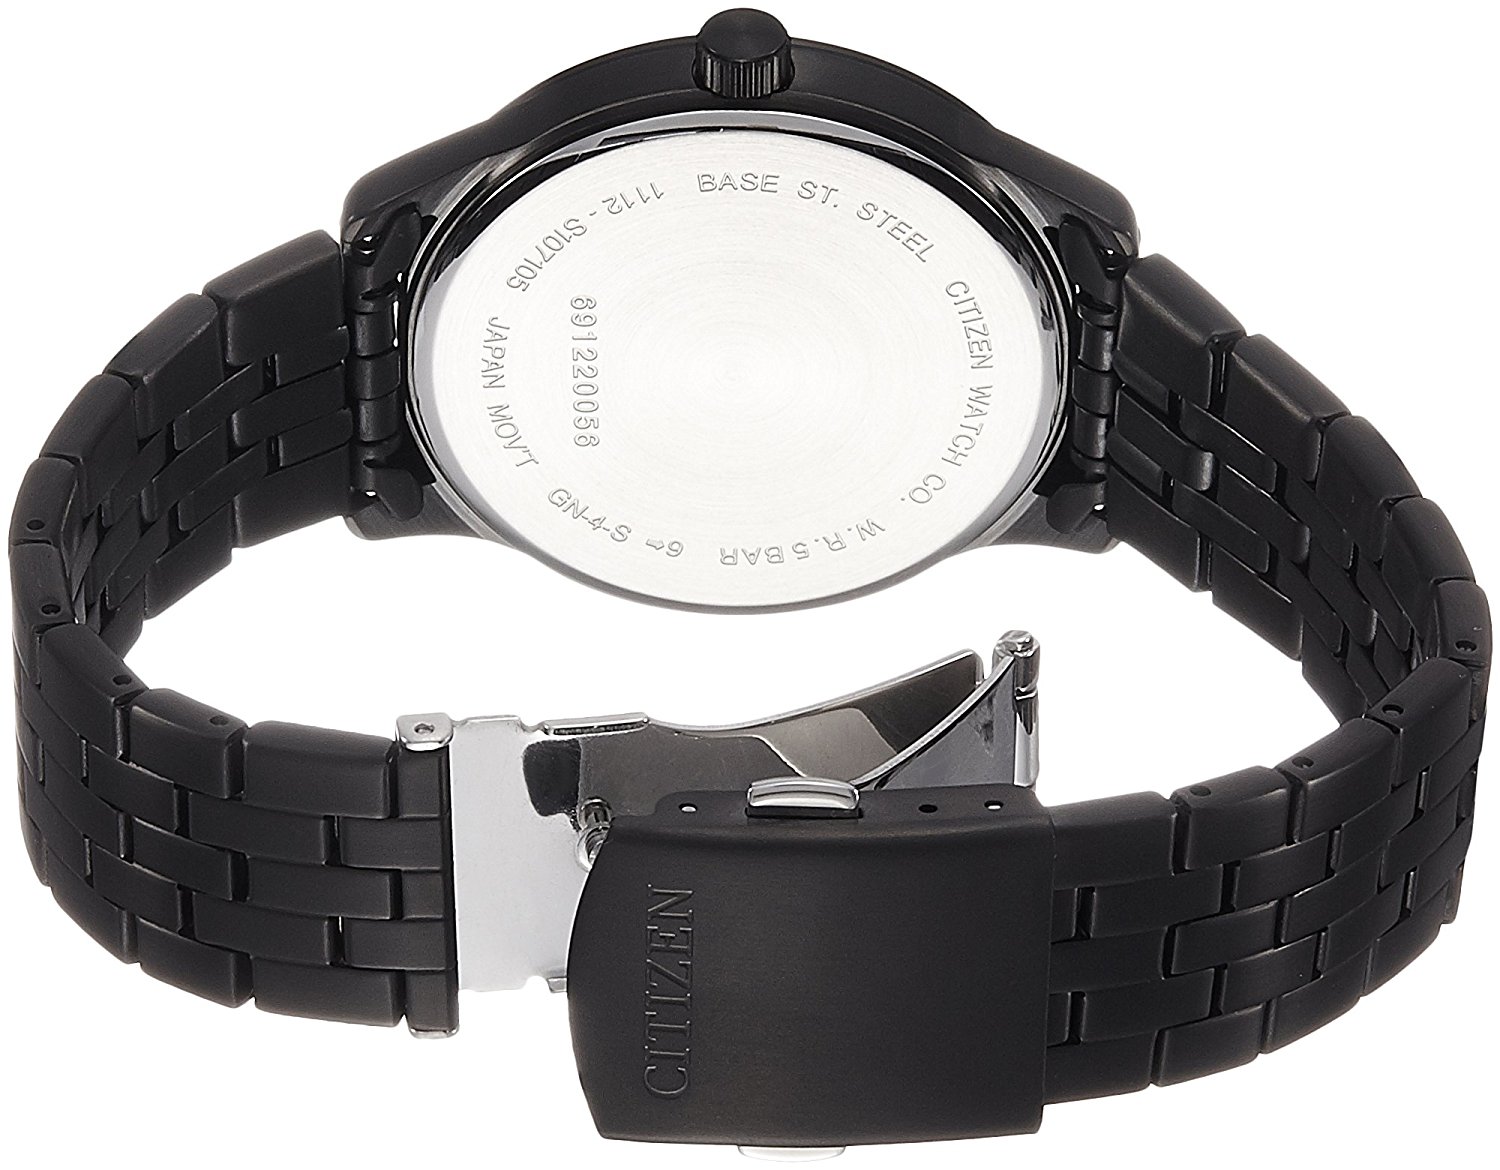 Thiết kế với tông màu đen quyền lực giúp chiếc đồng hồ Citizen nam BI1055-52E trở nên nam tính hơn